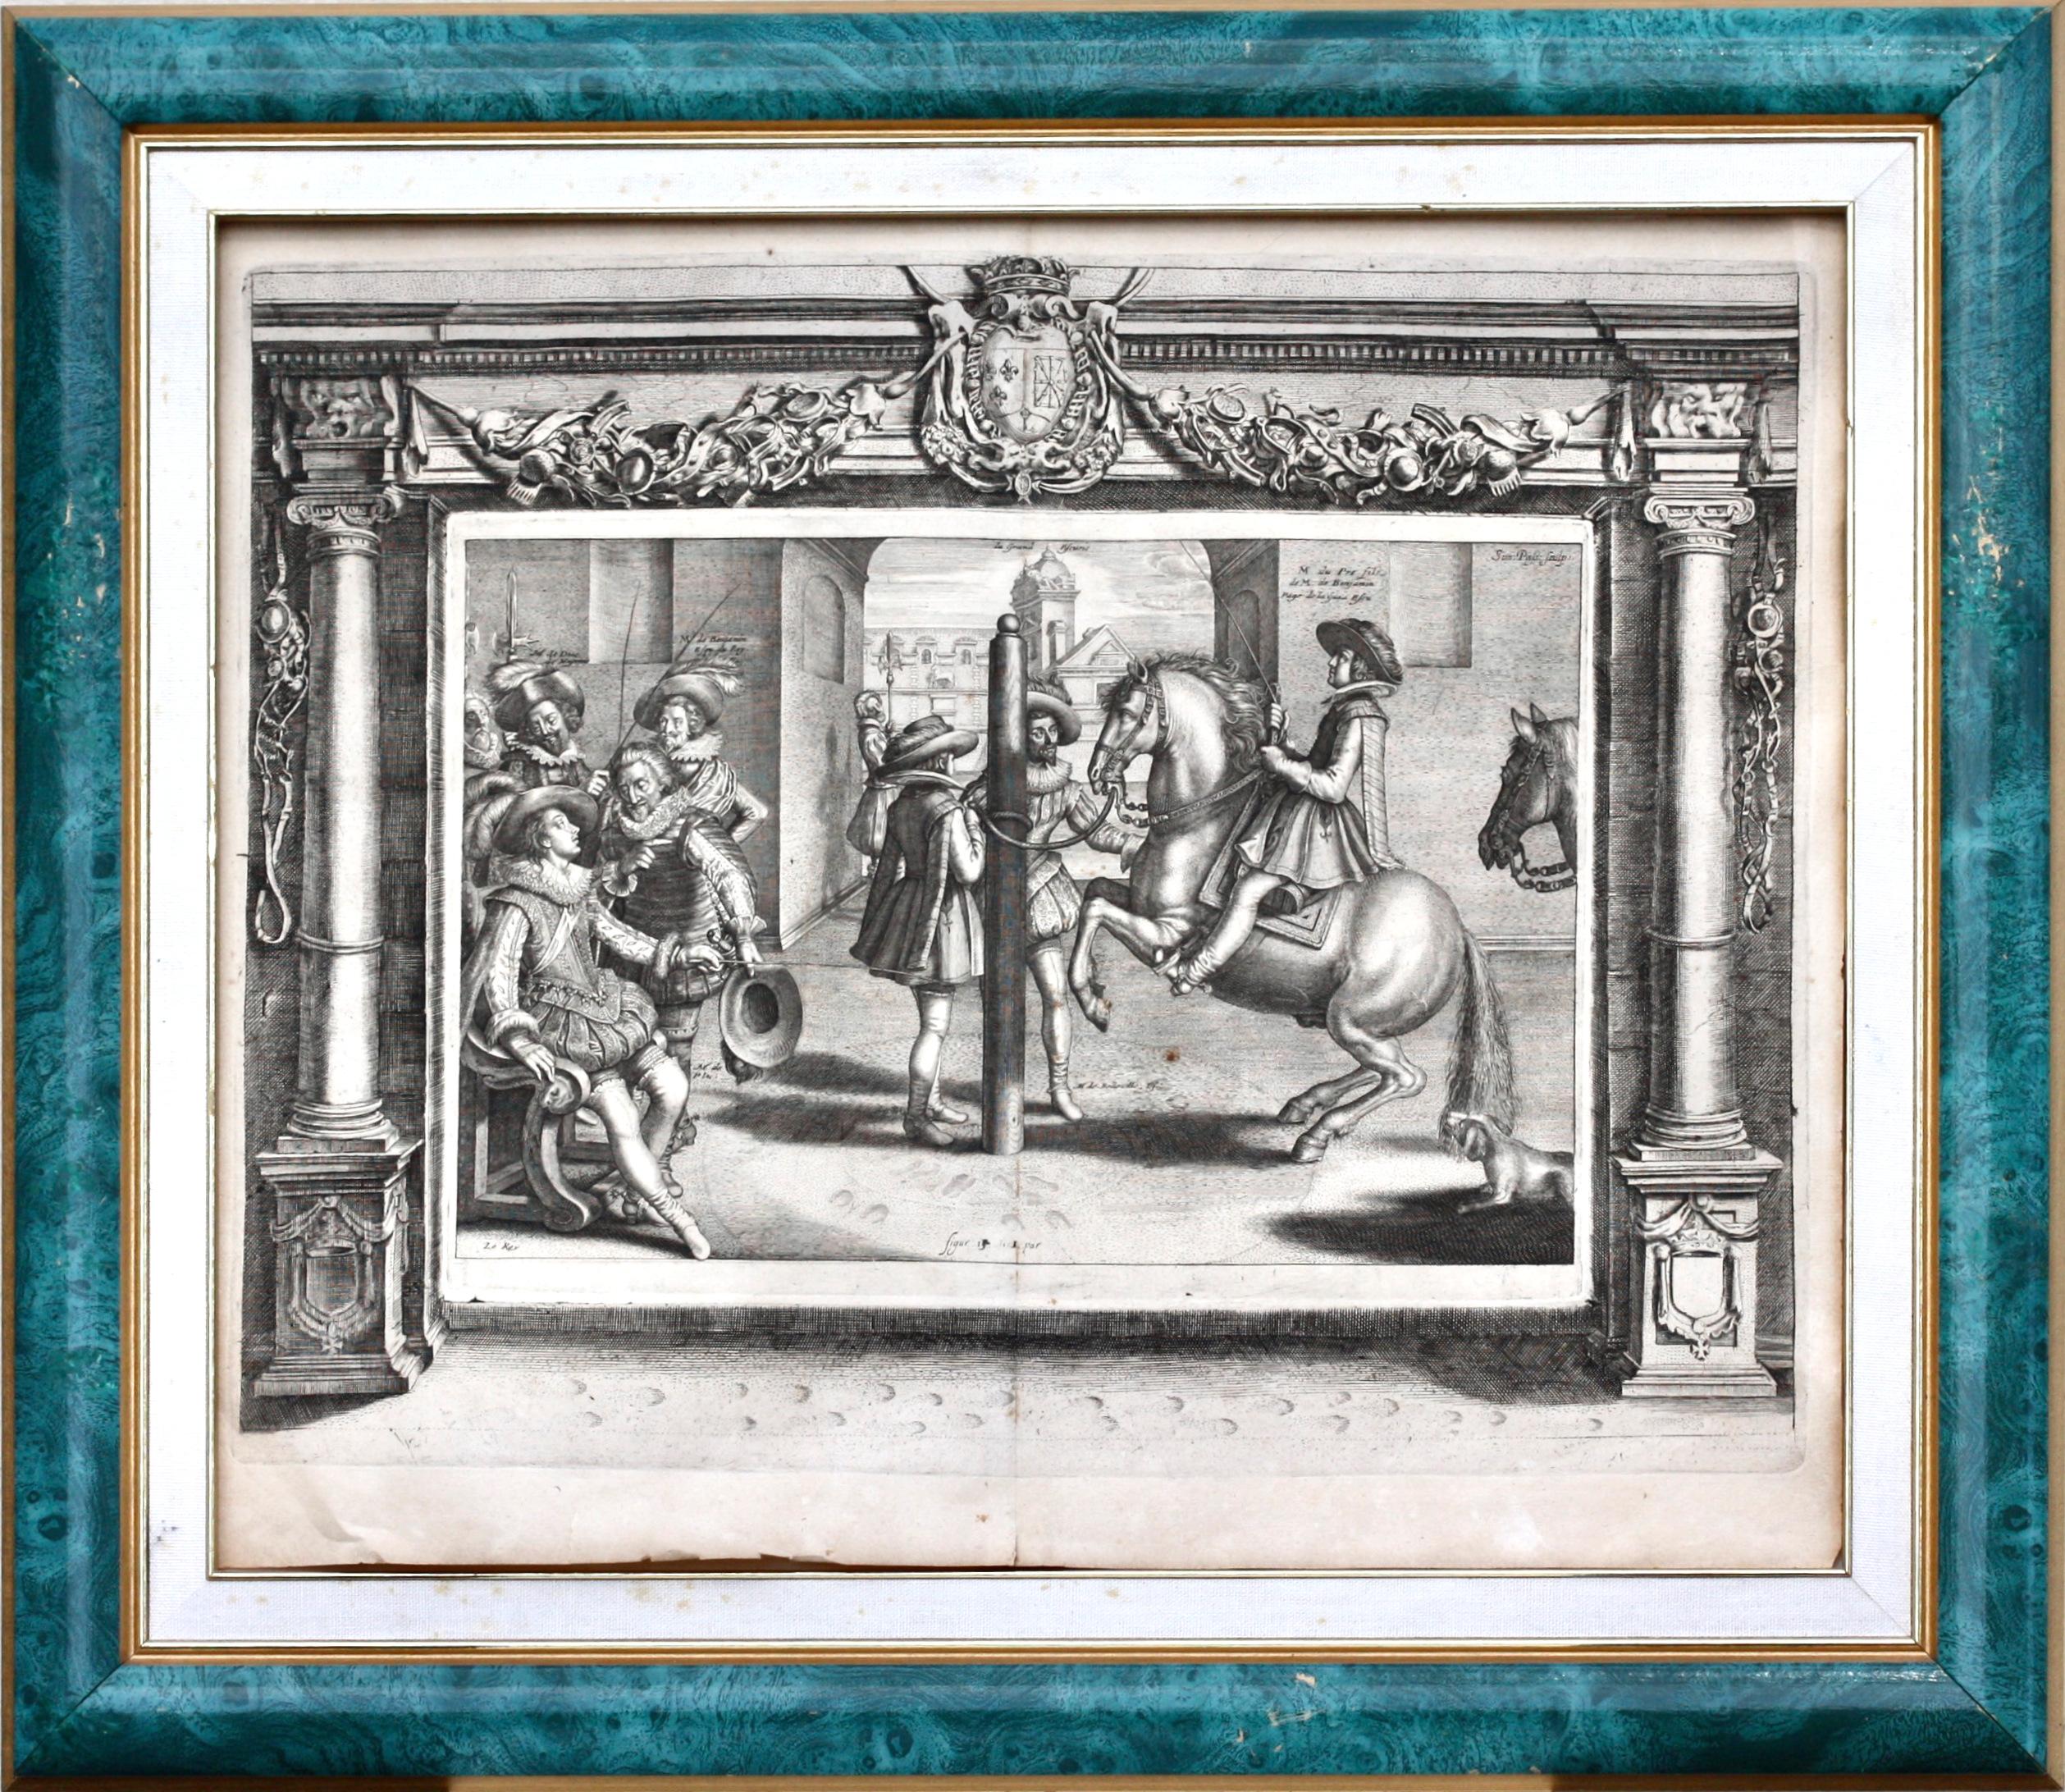 Ensemble de quatre gravures équestres françaises
18e-19e siècle
représentant des aristocrates et des étalons de prix dans une procession ou présentés lors d'un festival, 
les bordures supérieures avec des armoiries de la famille royale